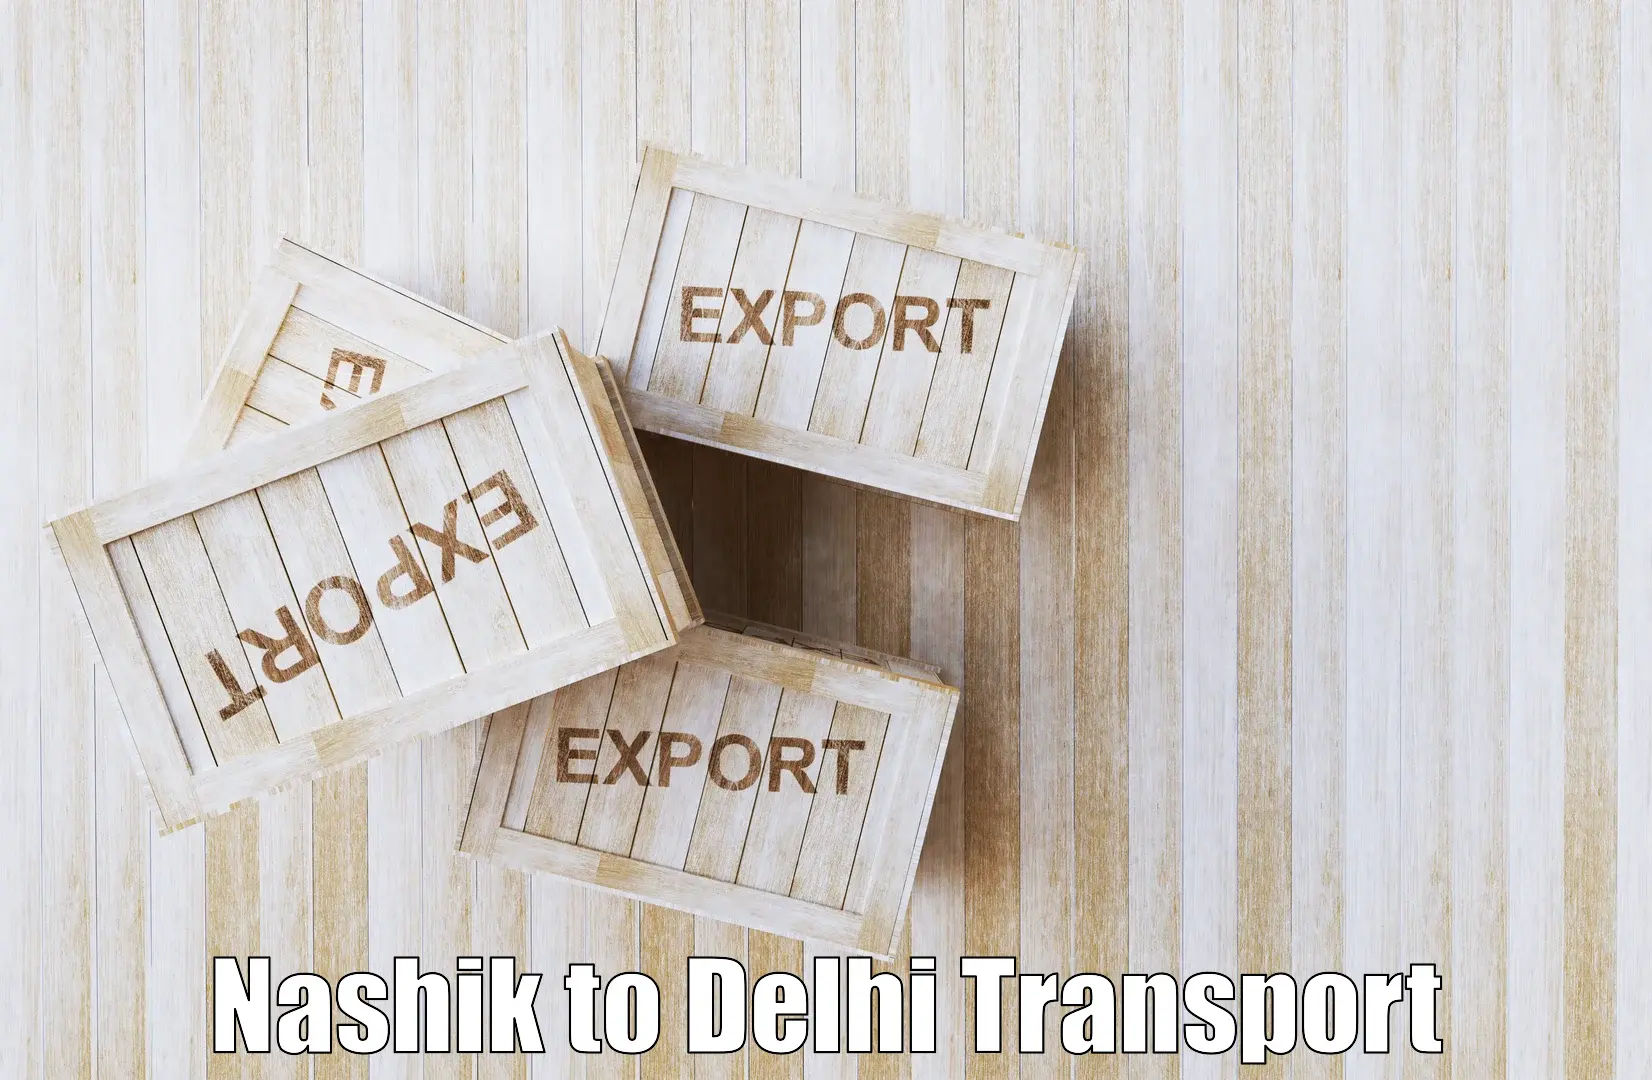 Online transport Nashik to Jawaharlal Nehru University New Delhi